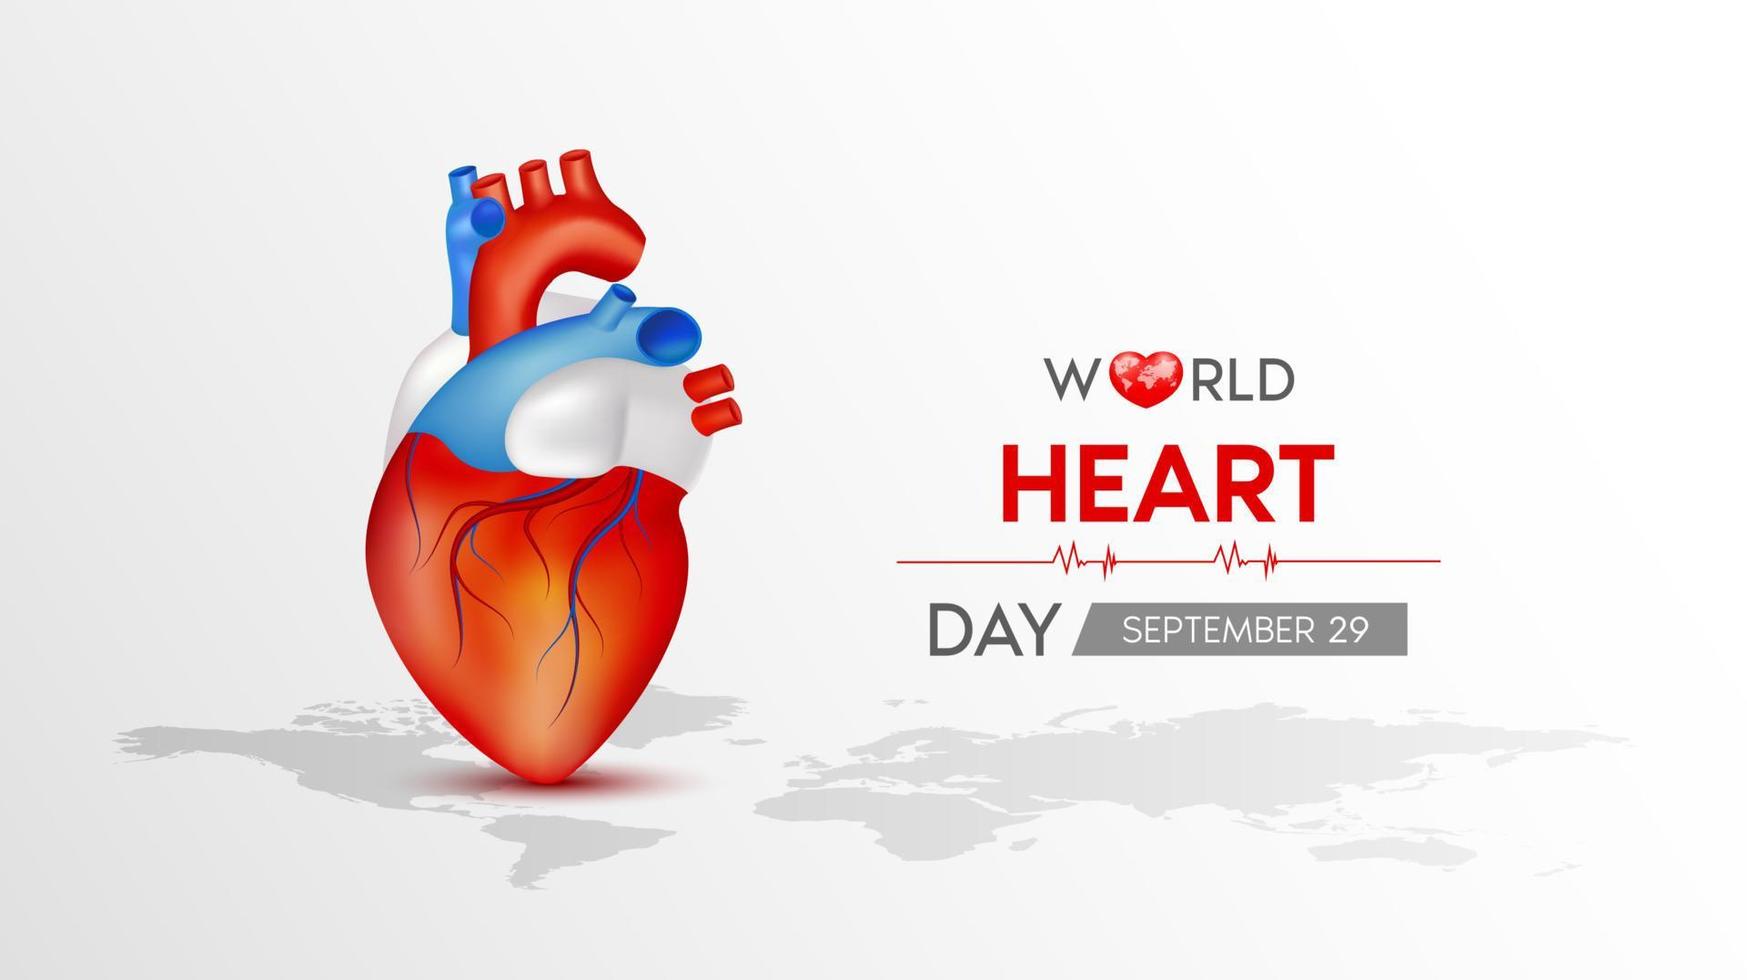 dia mundial do coração. coração vermelho com mapa-múndi branco. bandeira abstrata do fundo do batimento cardíaco, onda do coração. ilustração em vetor 3D.